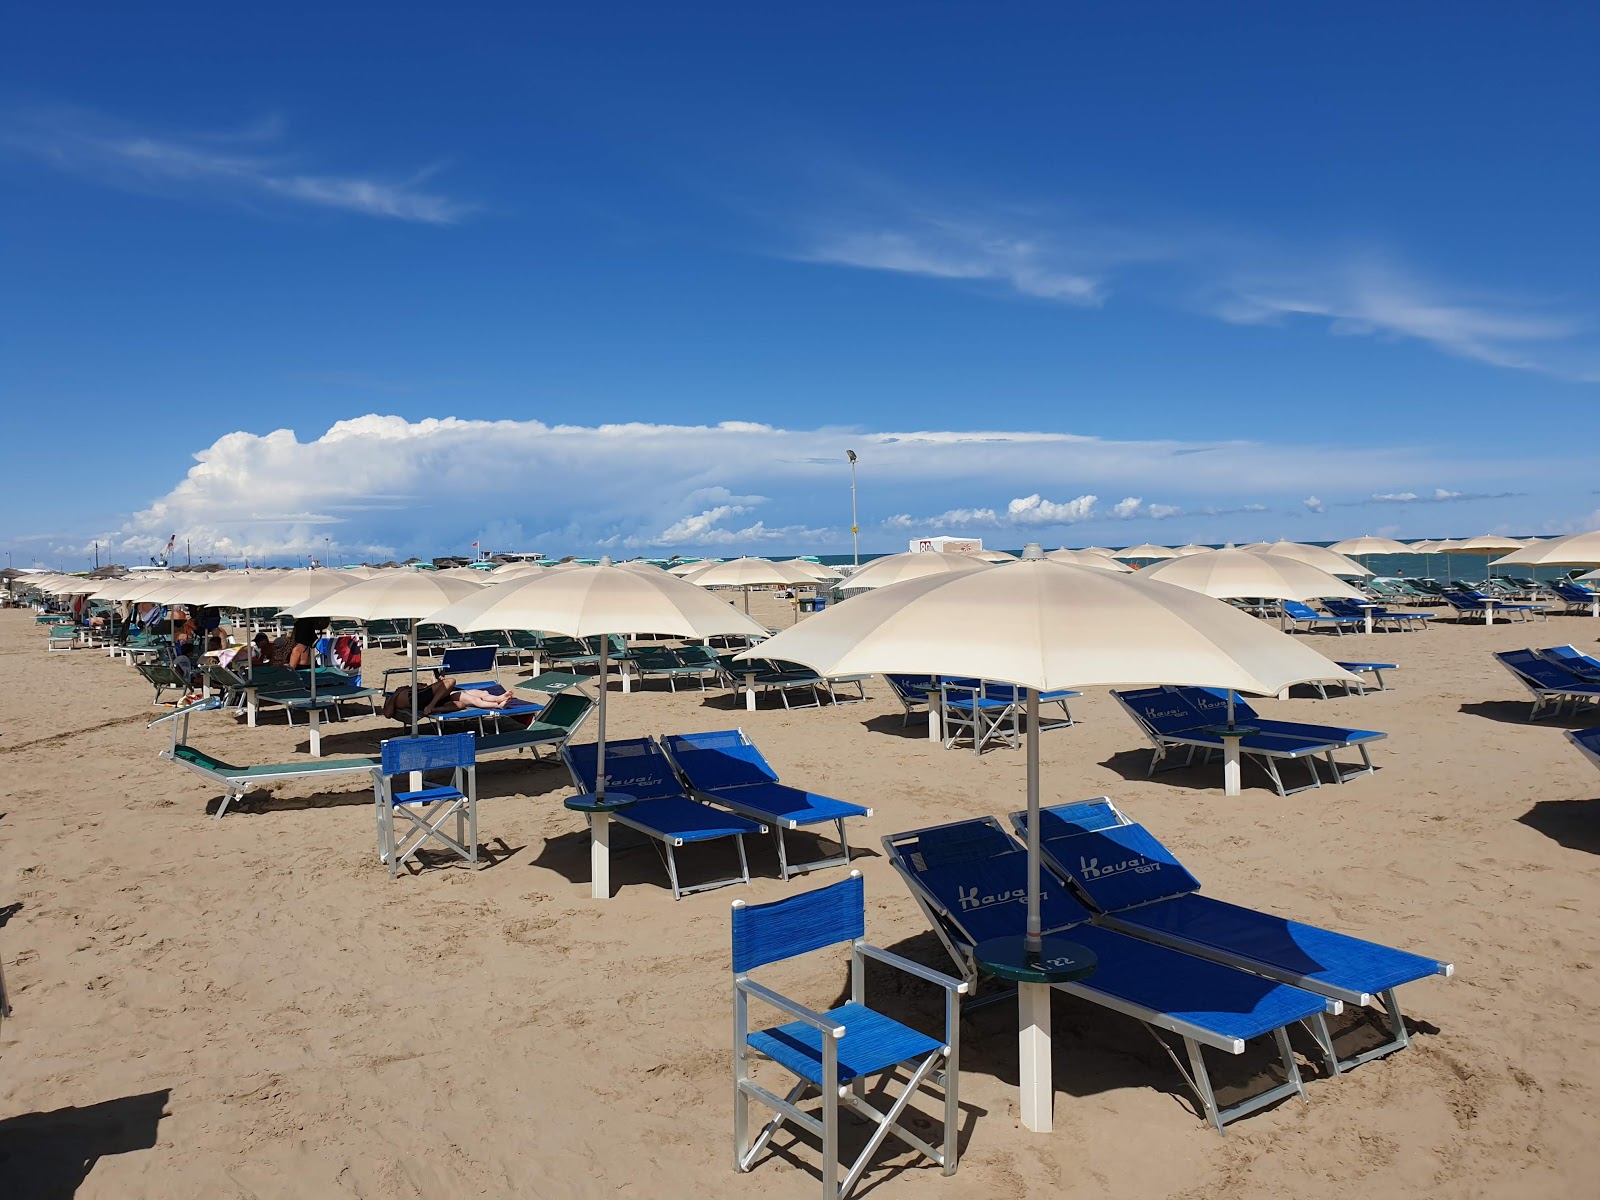 Zdjęcie Rimini beach z poziomem czystości wysoki